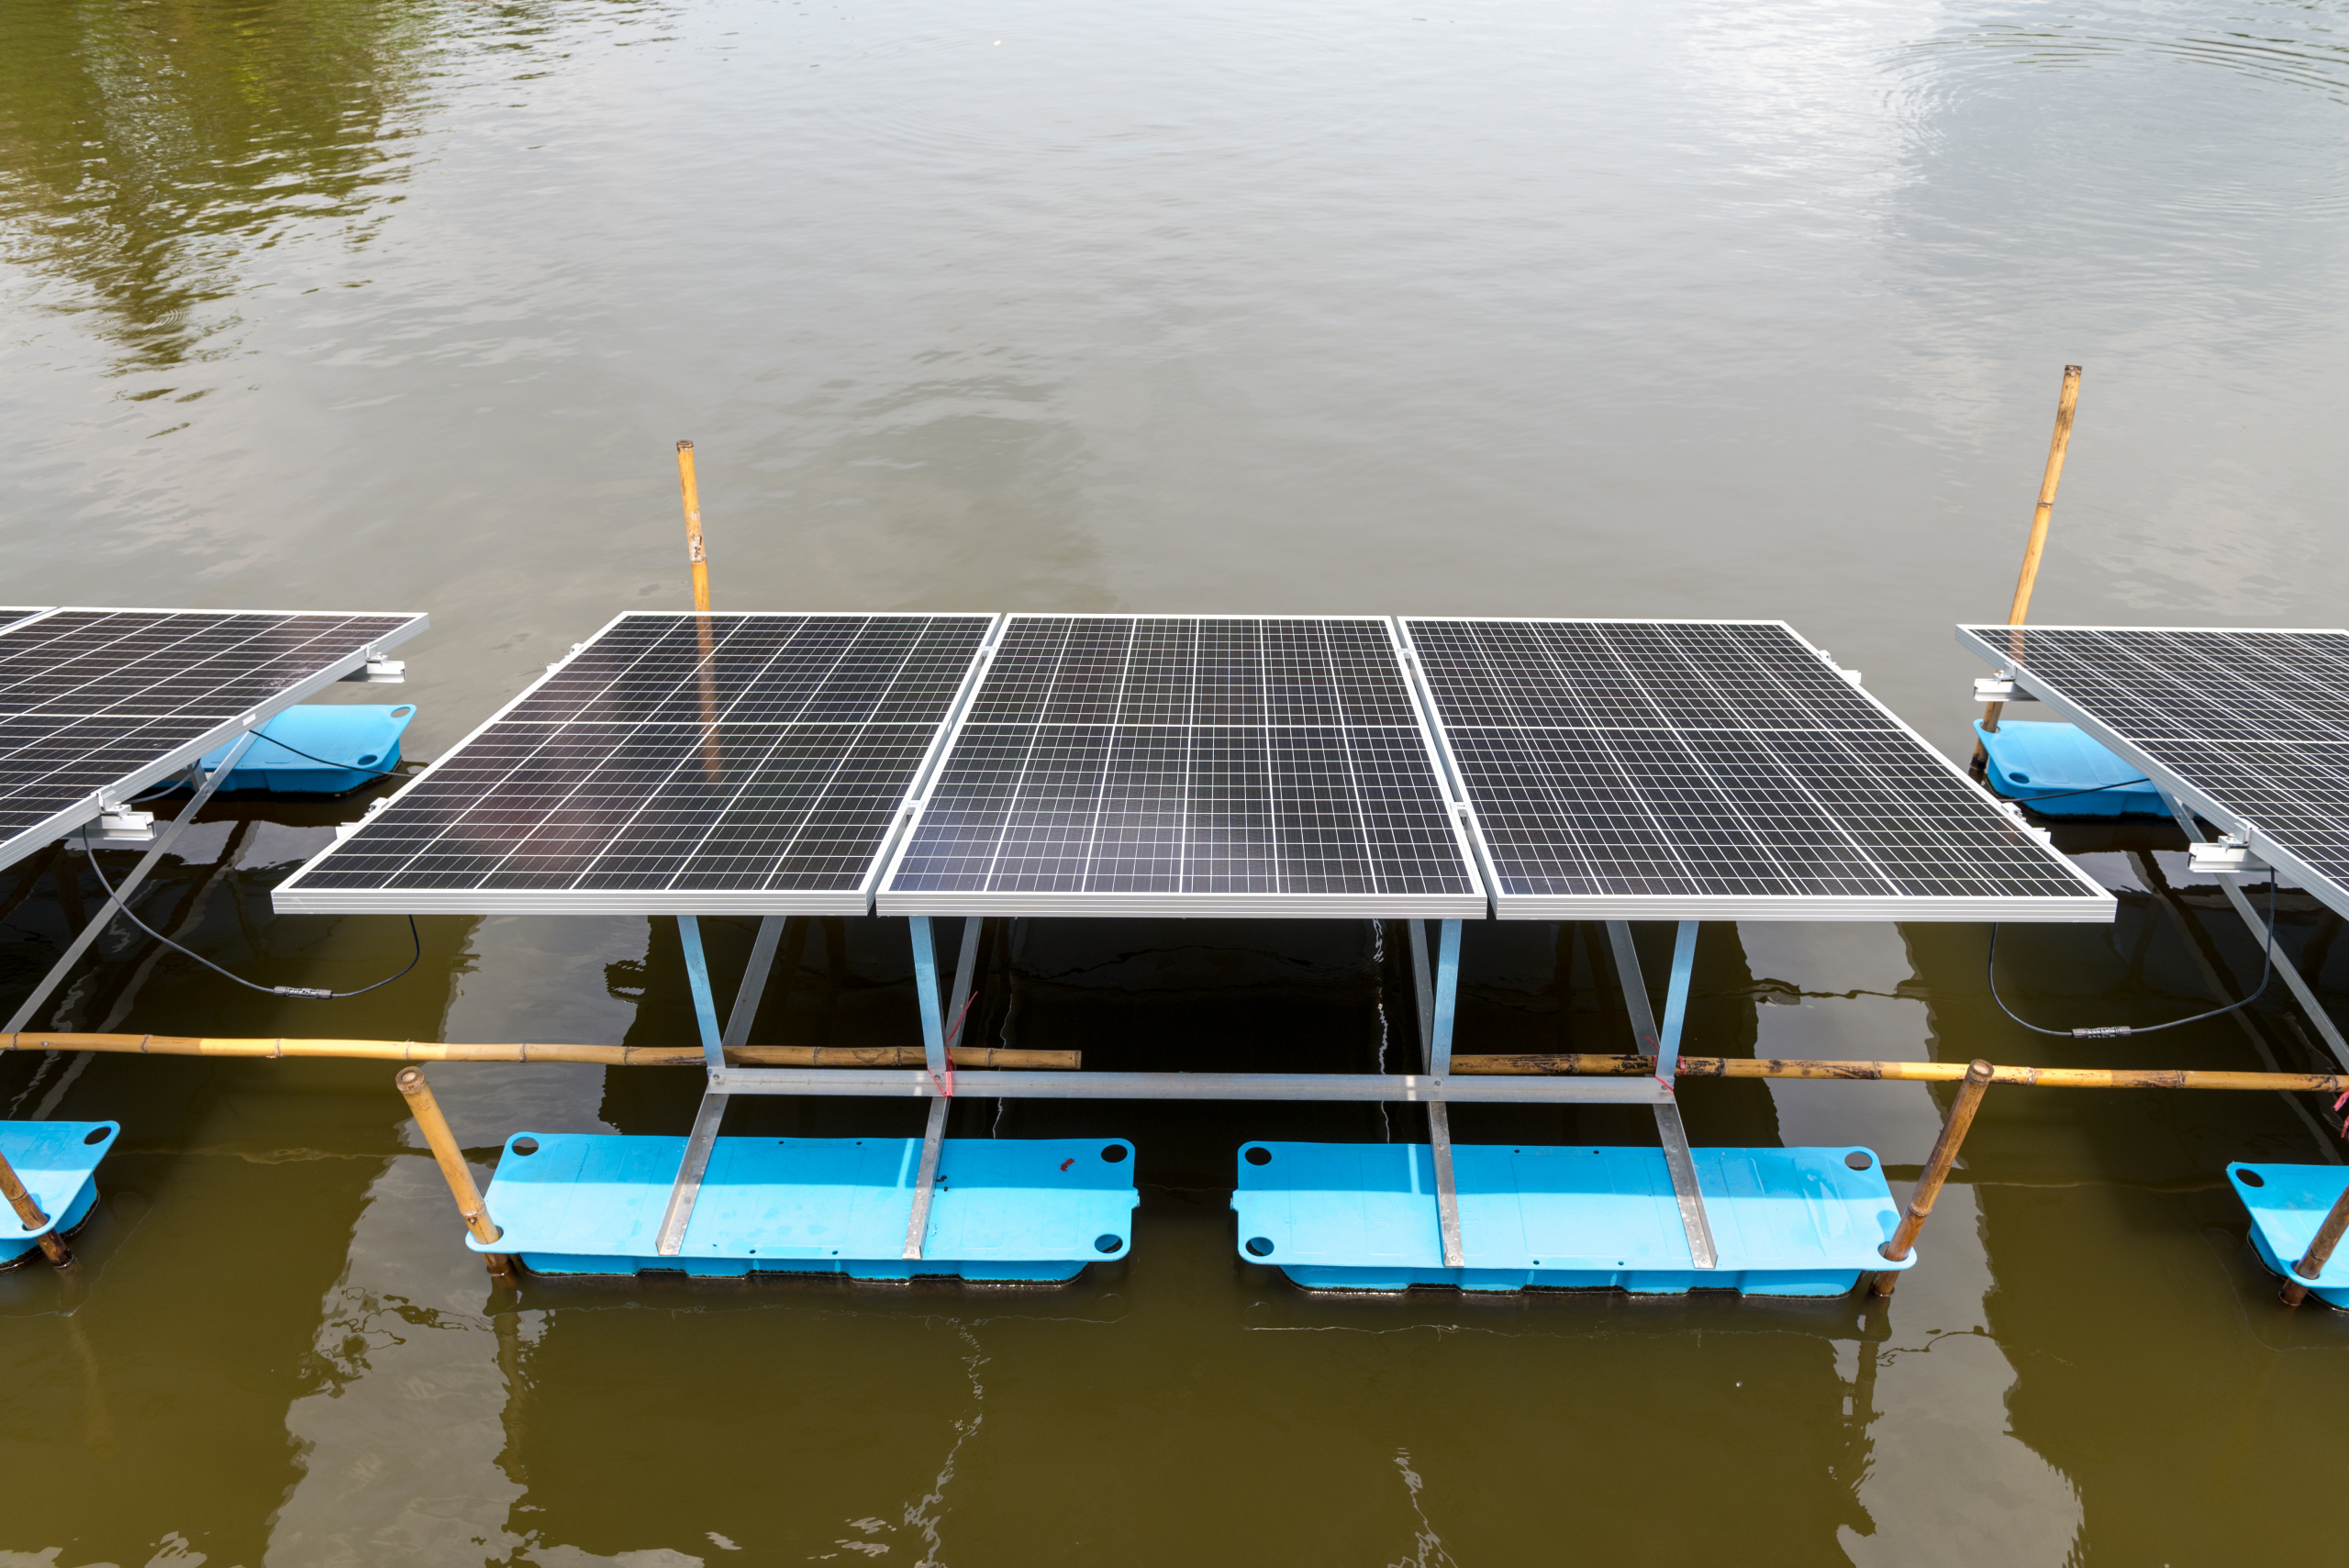 Plutajući solarni paneli su idealno rešenje u ovim slučajevima